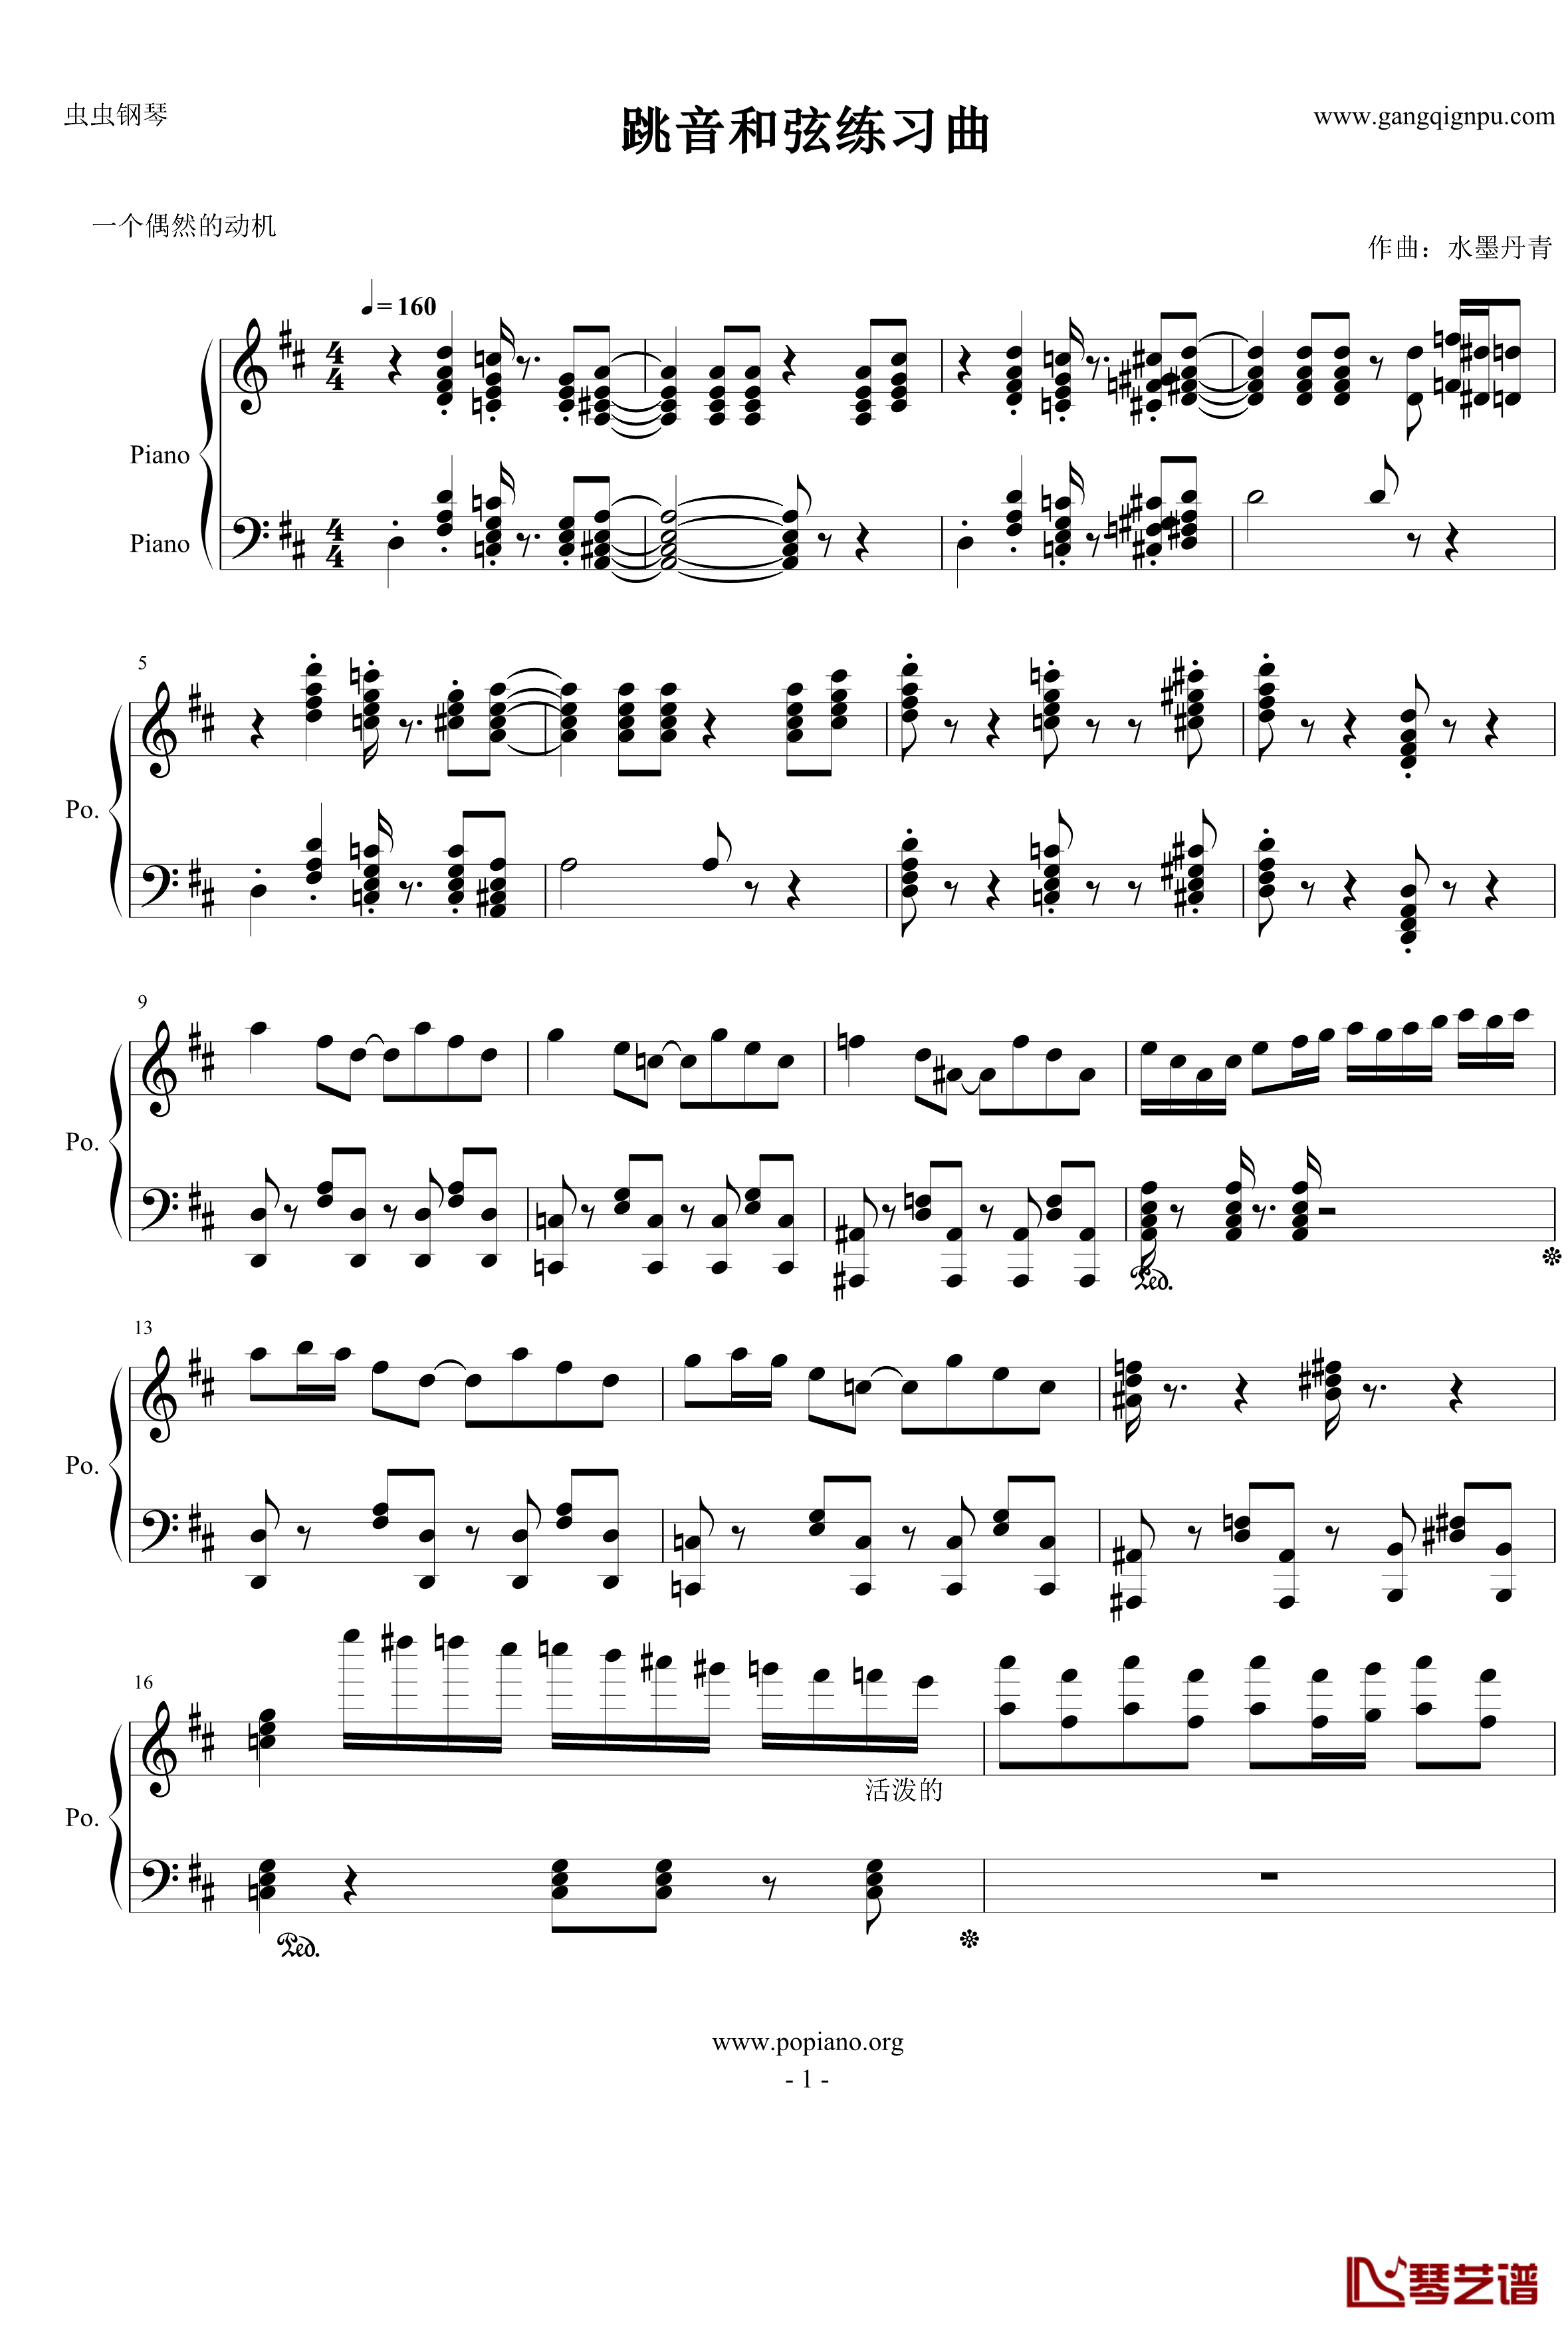 跳音和弦练习曲钢琴谱-水墨丹青music1